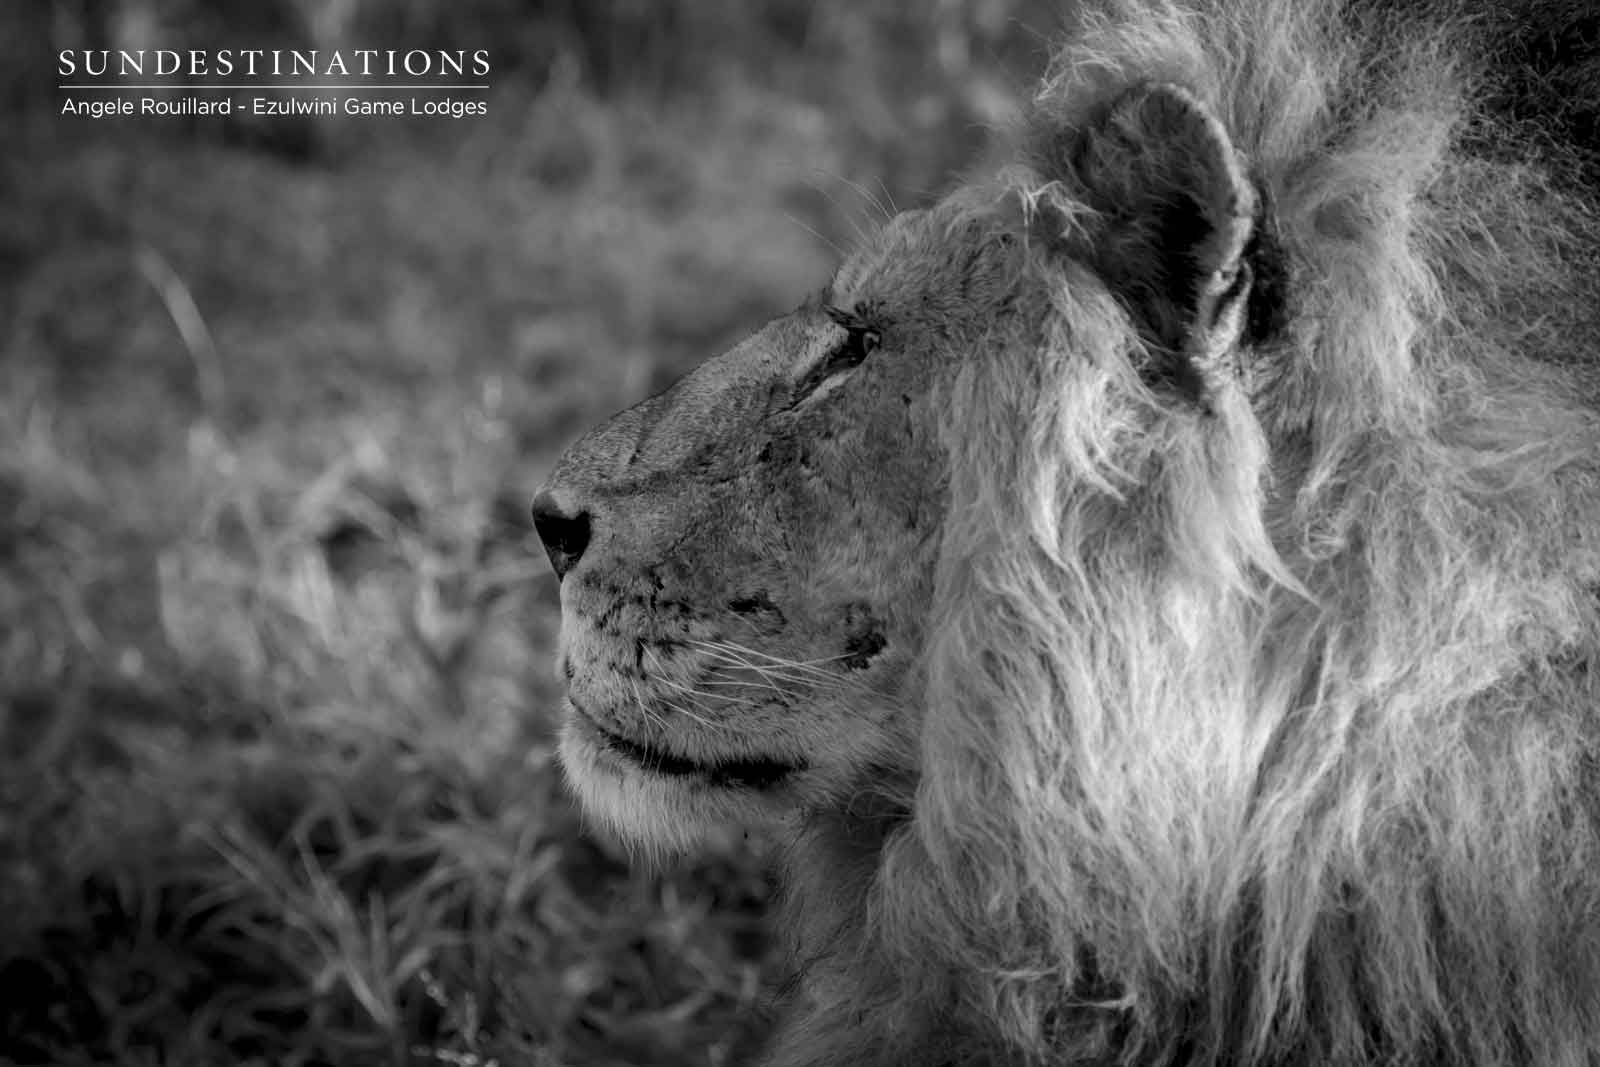 Machaton Male Lions at Ezulwini